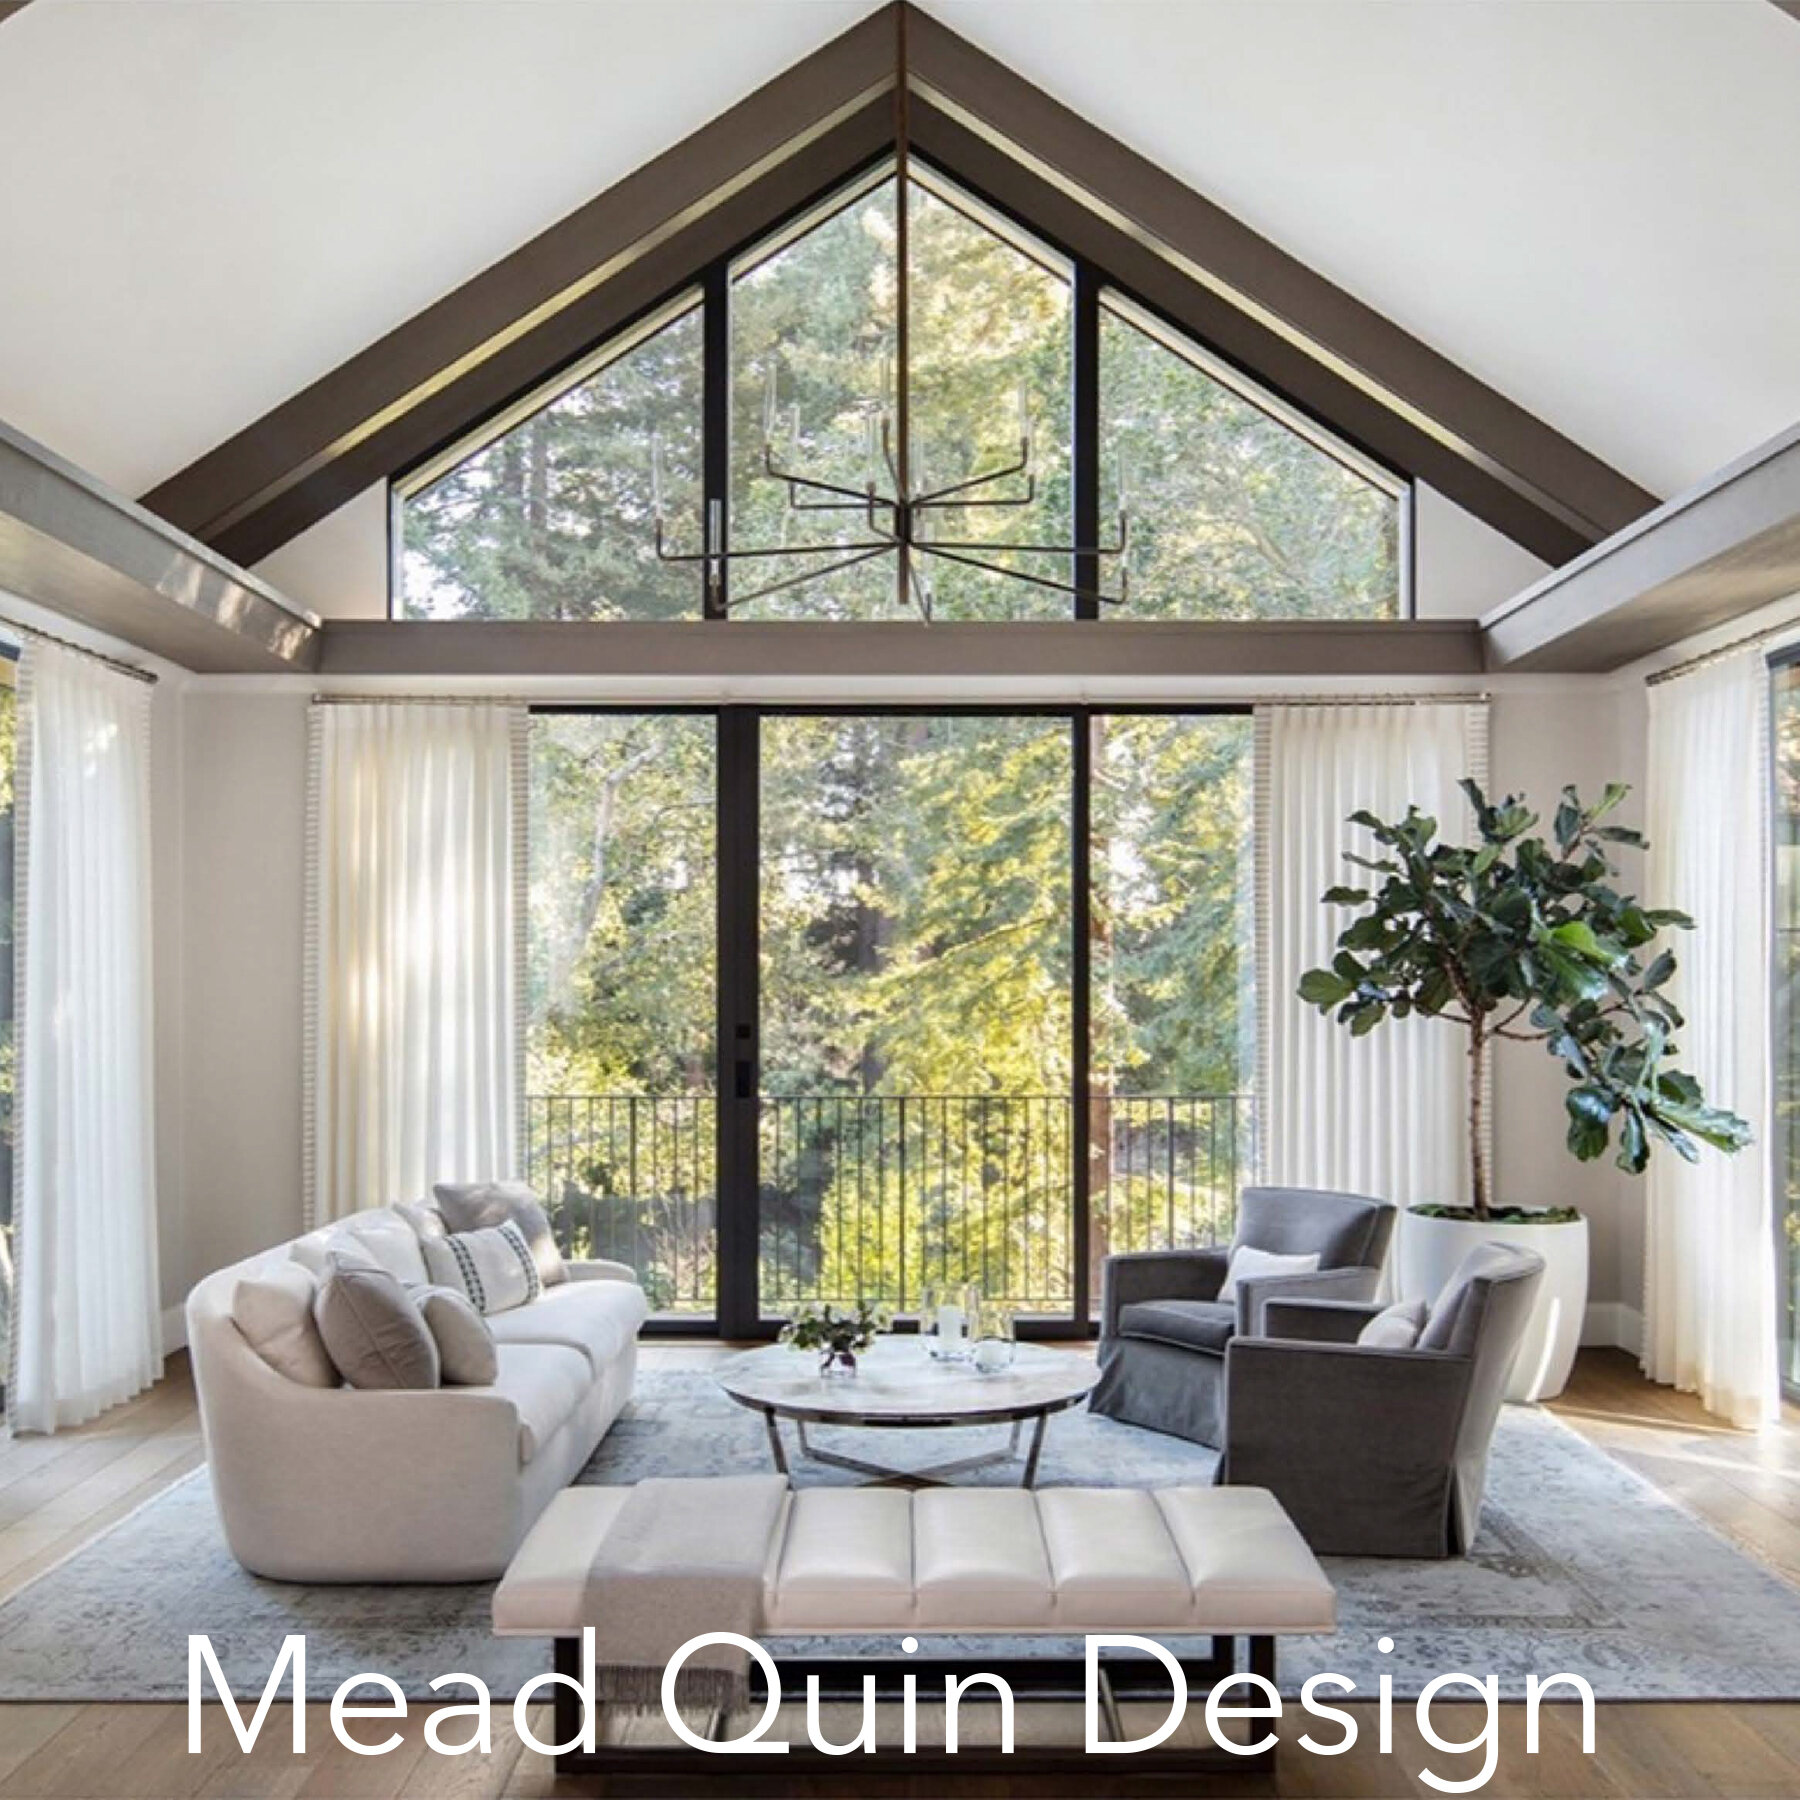 Mead Quin Design.jpg